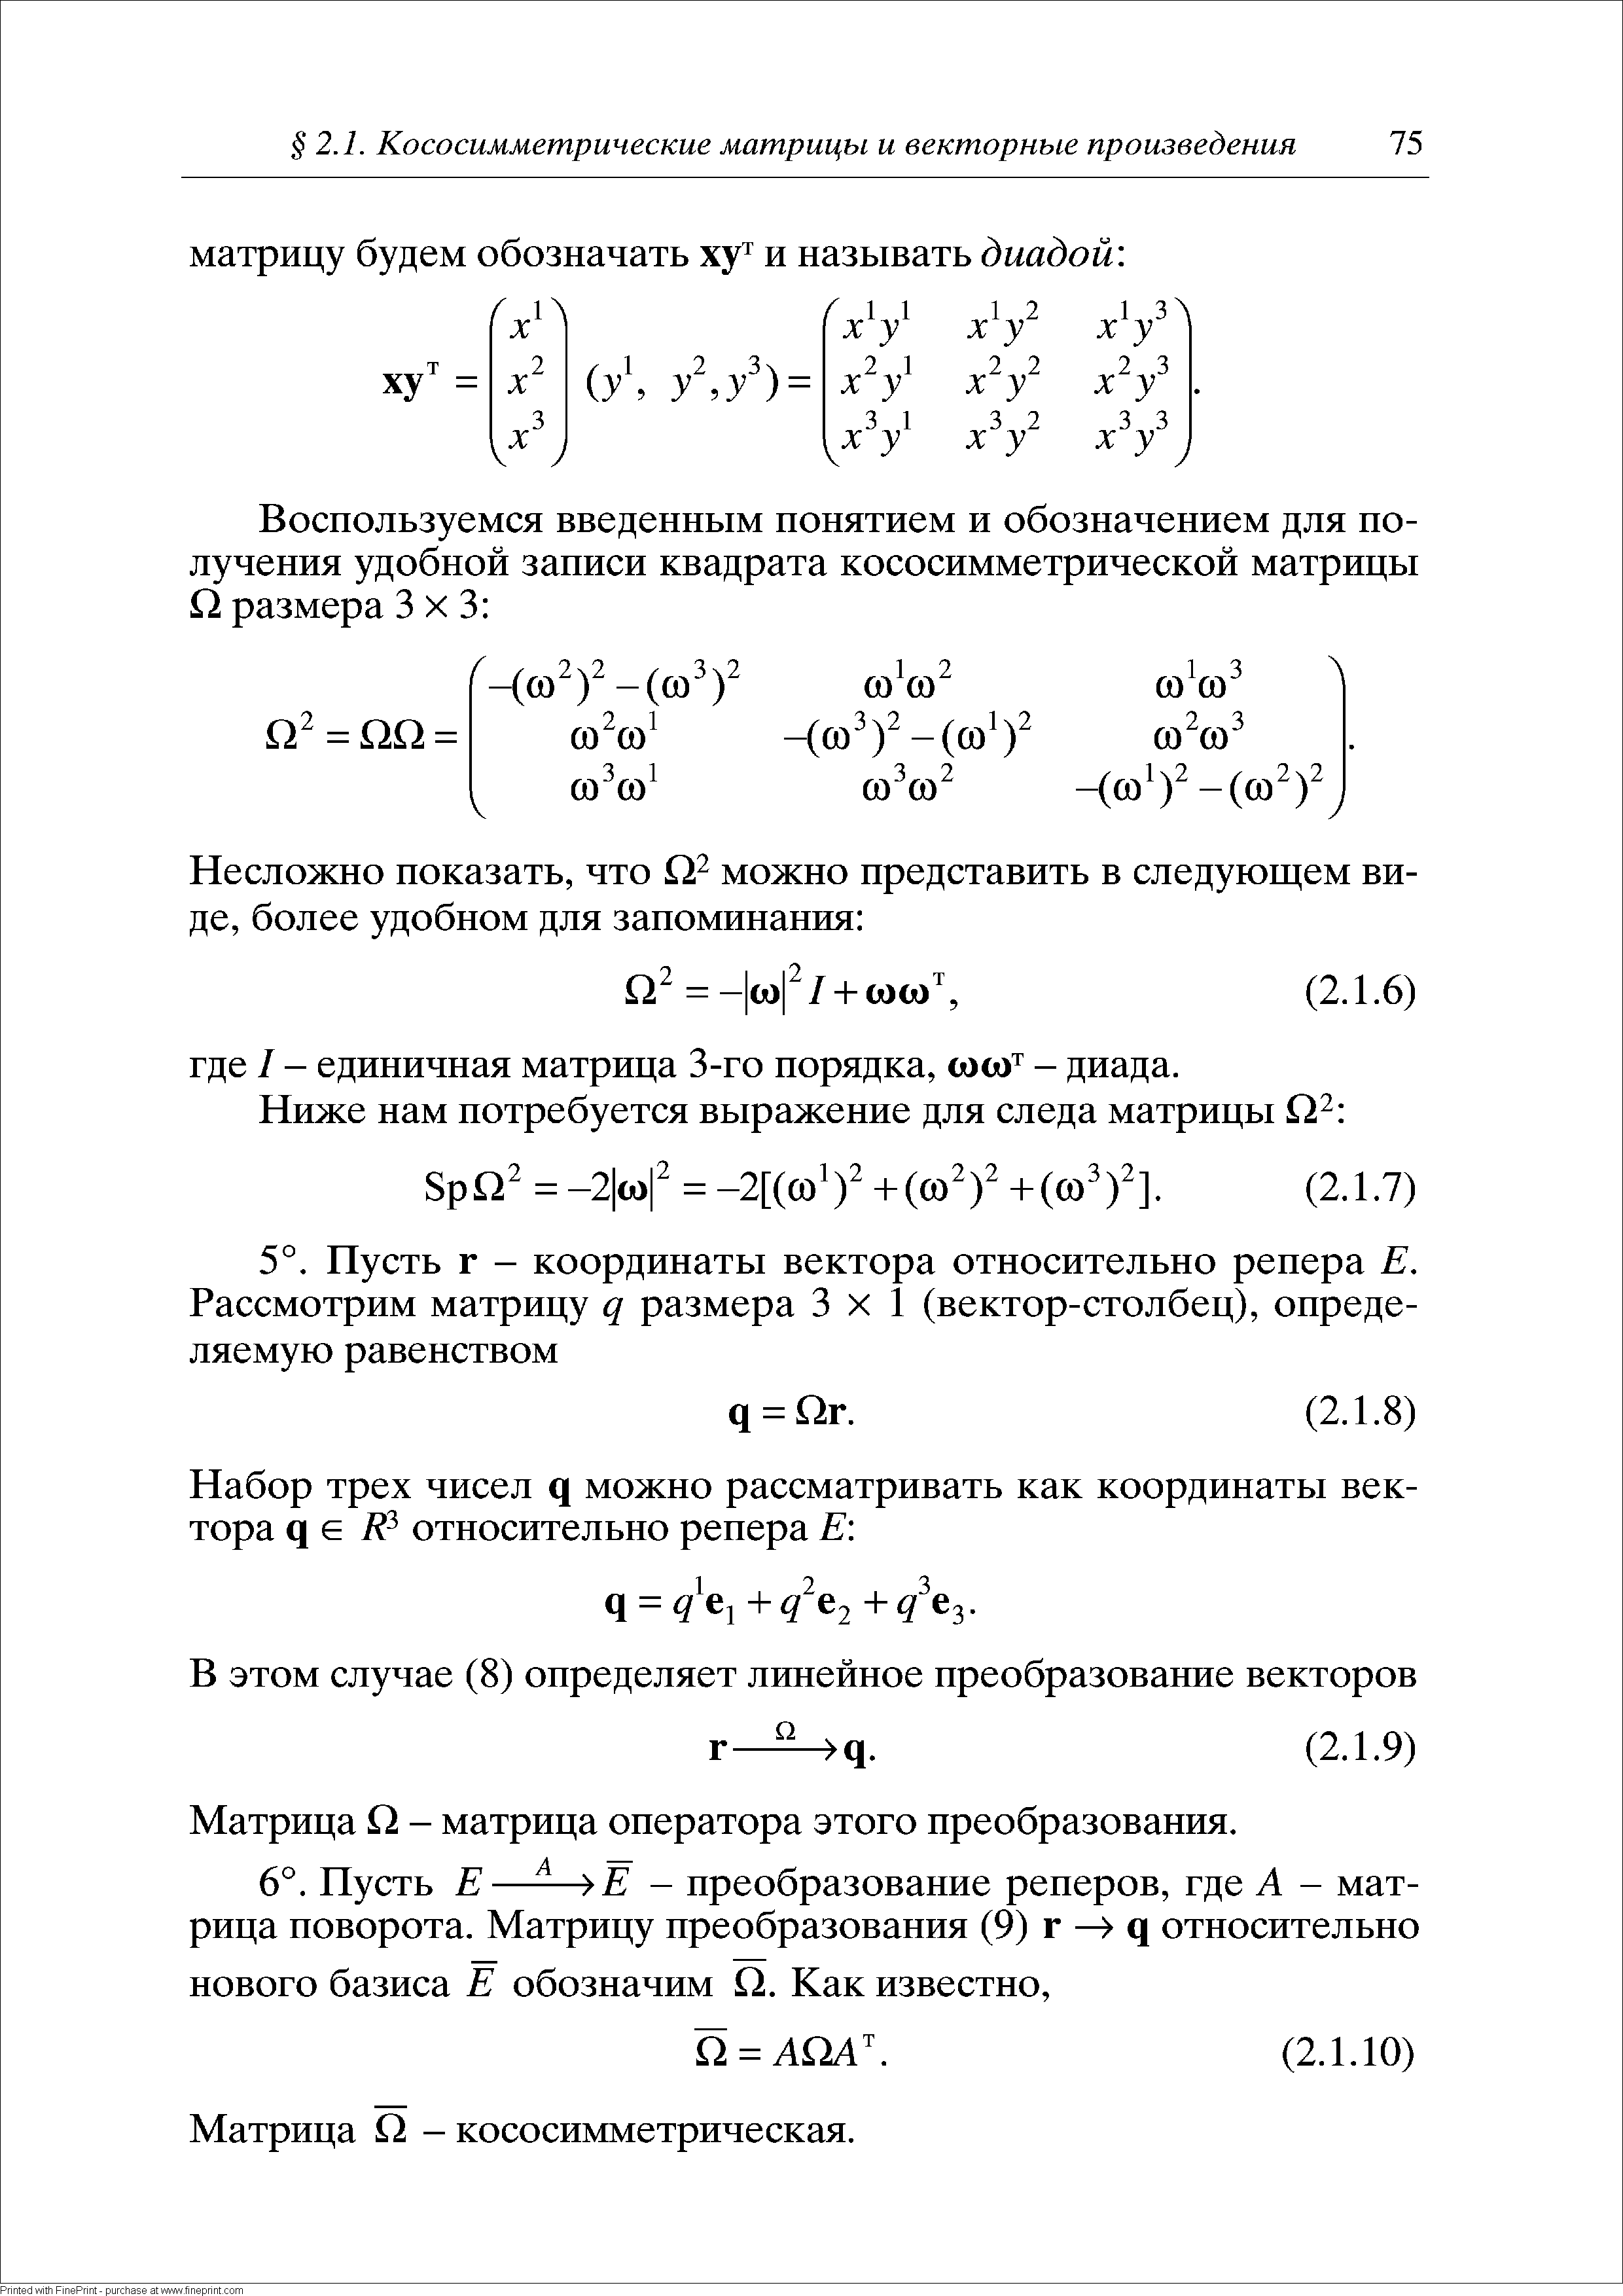 Матрица О - матрица оператора этого преобразования.
